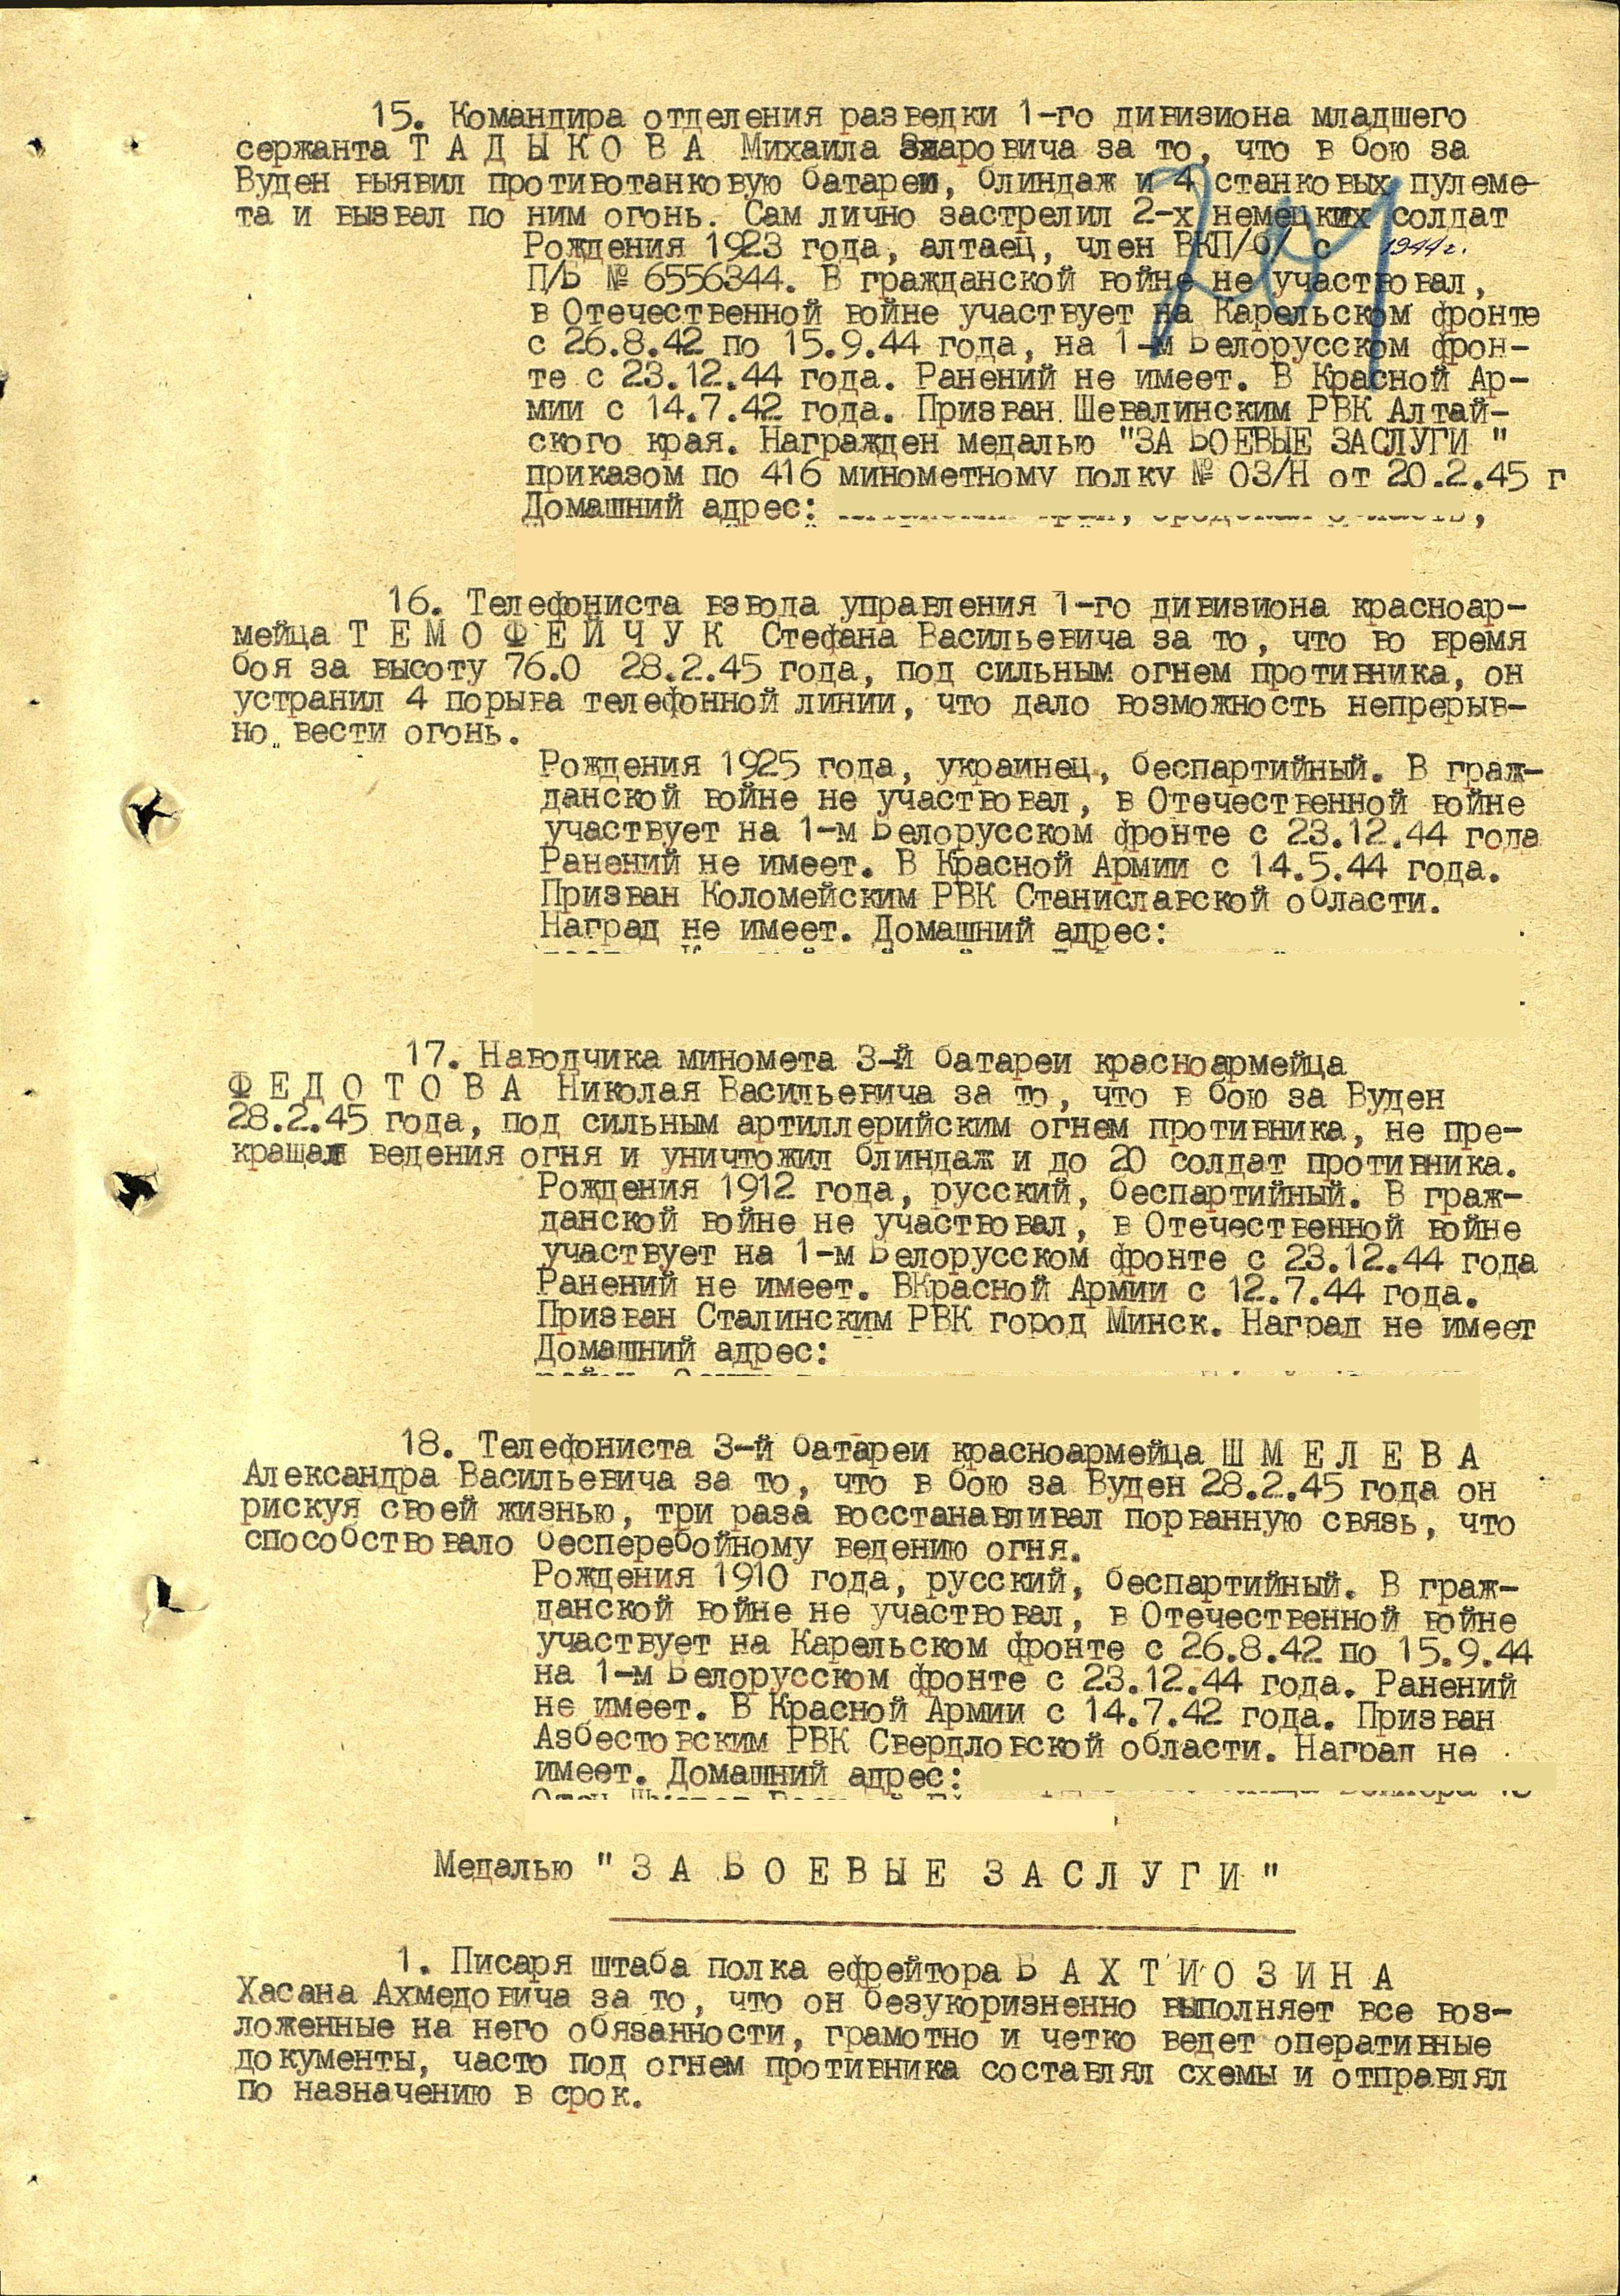 Из приказа о награждении Шмелева Александра Васильевича медалью за отвагу